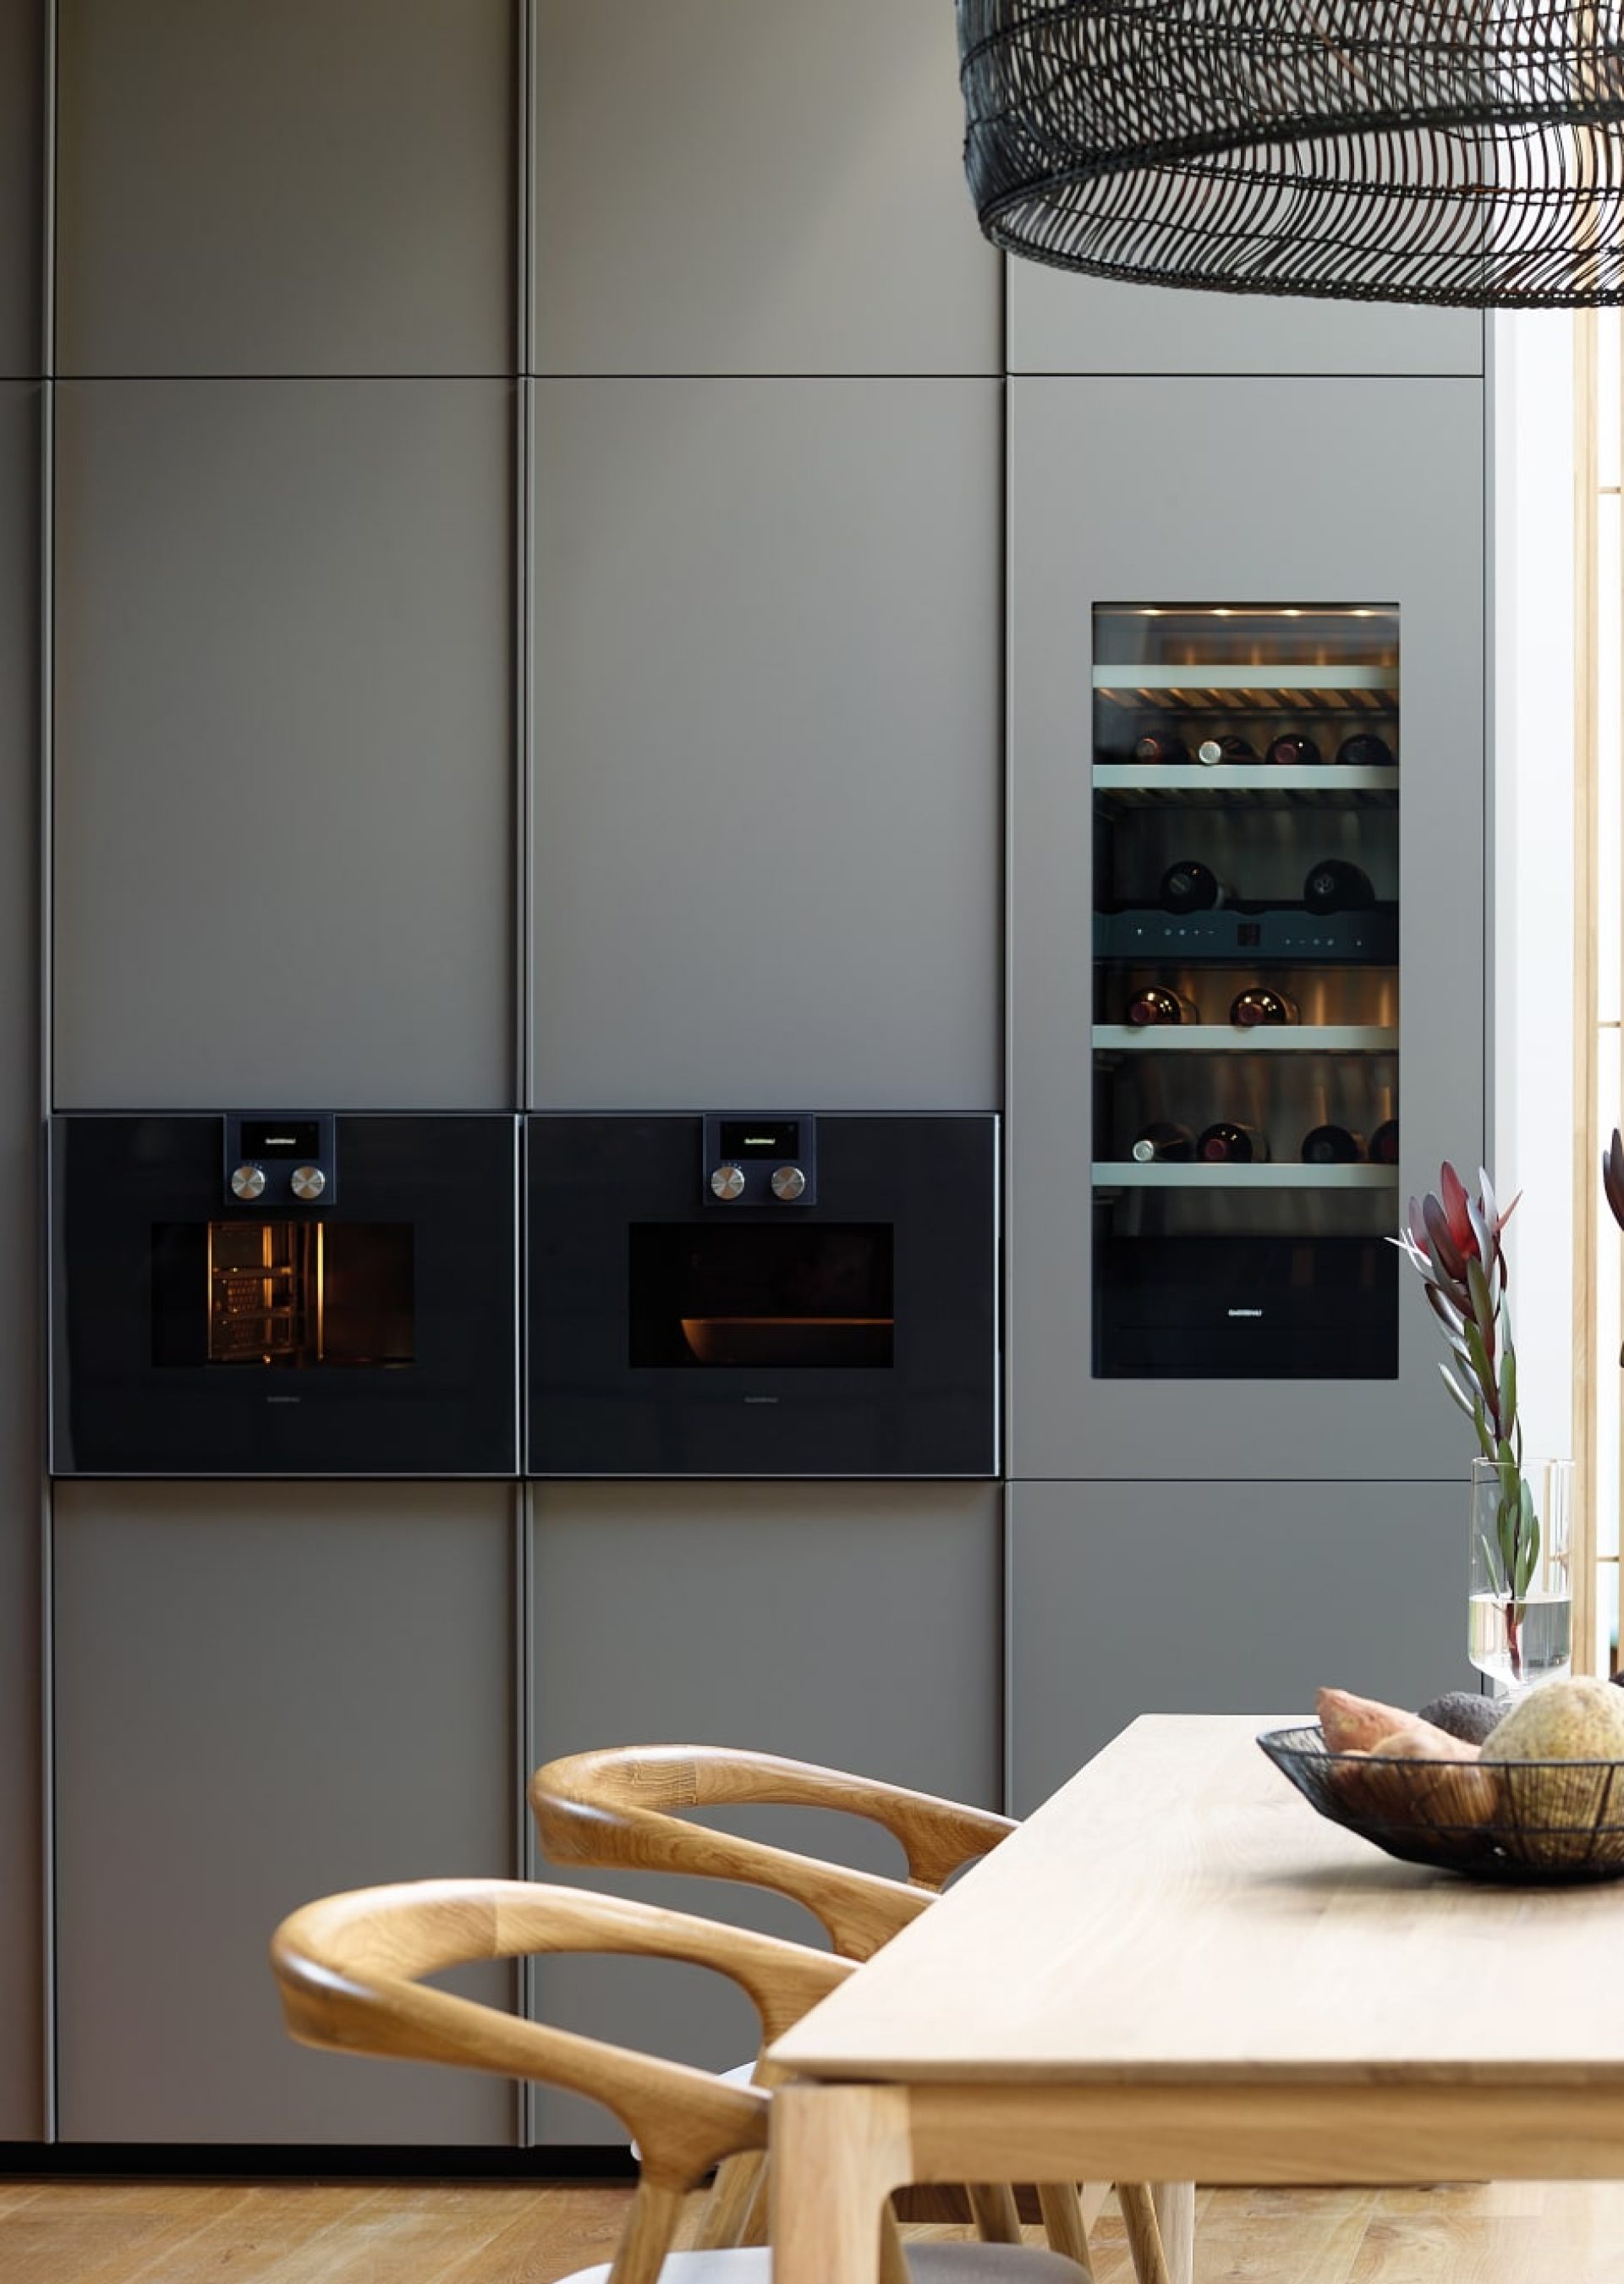 Muebles columna con electrodomésticos integrados: horno, microondas y vinoteca